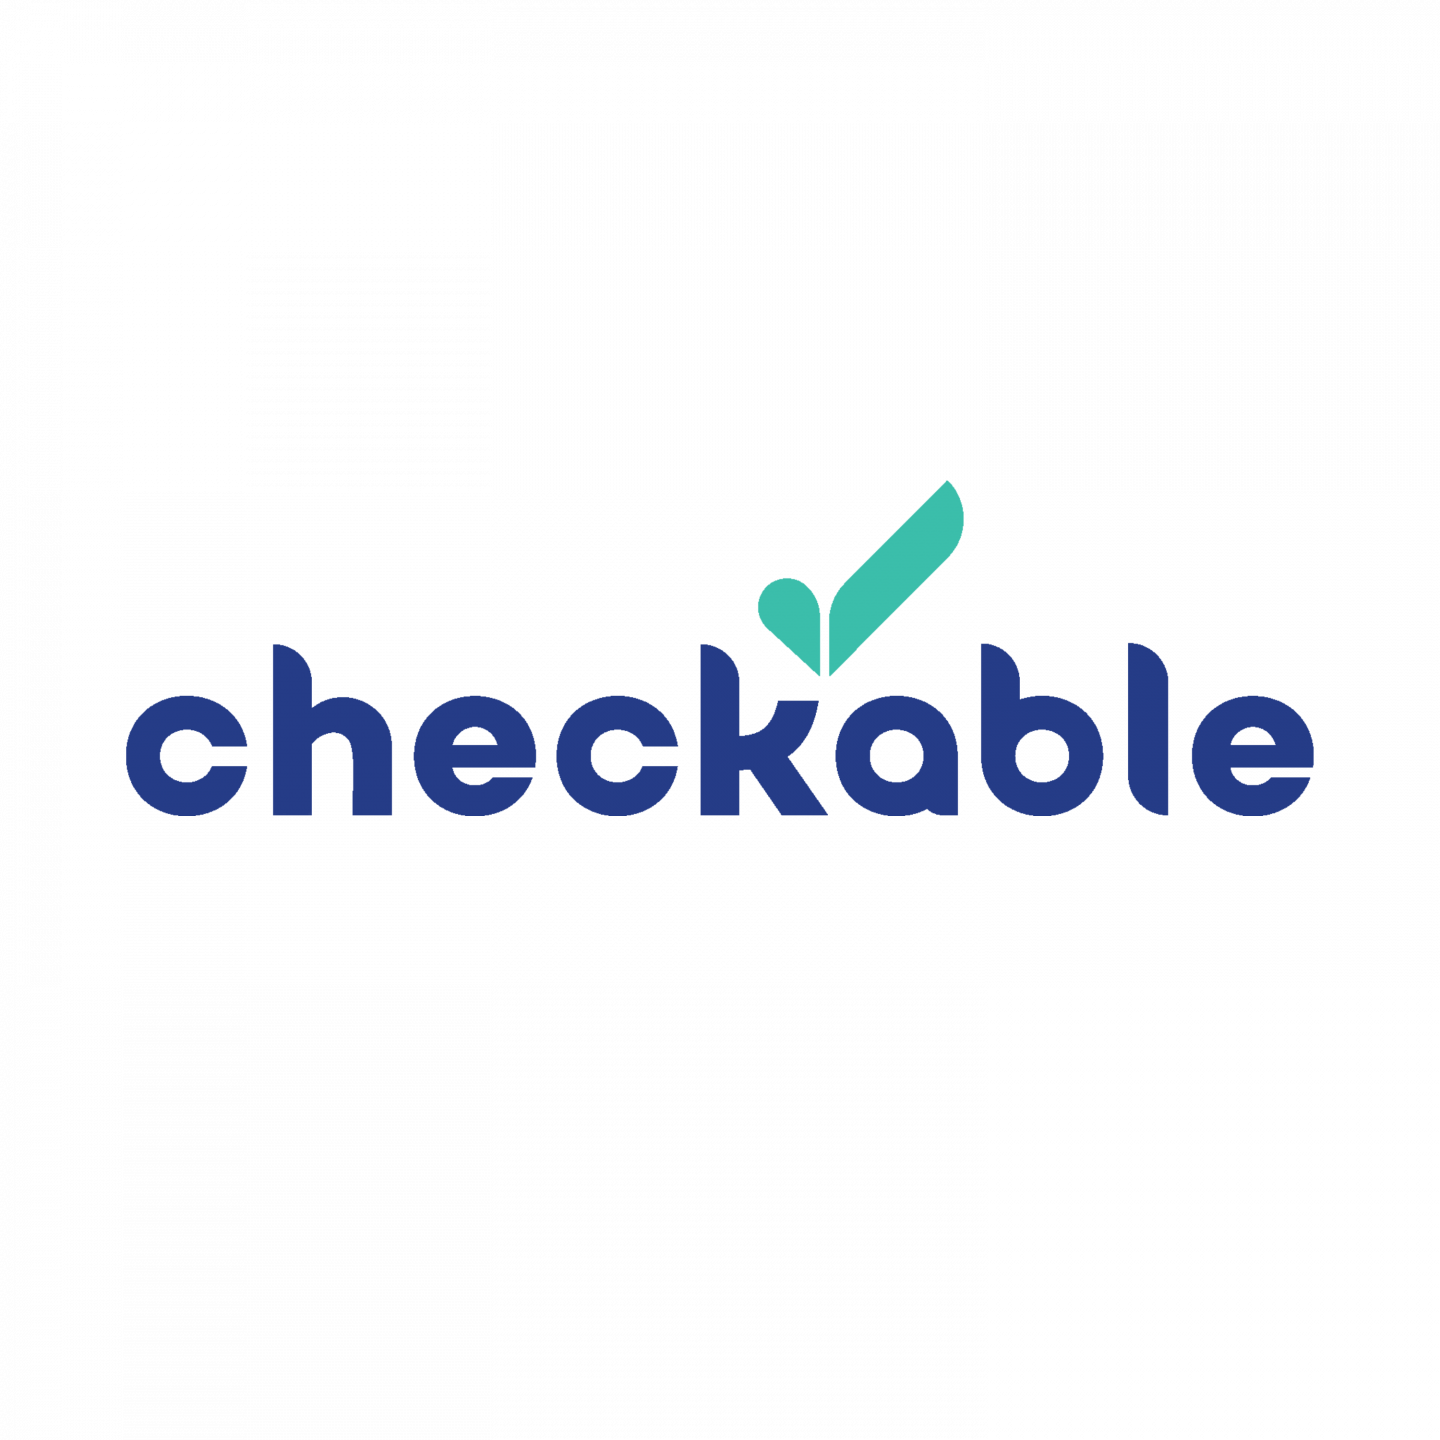 Checkable